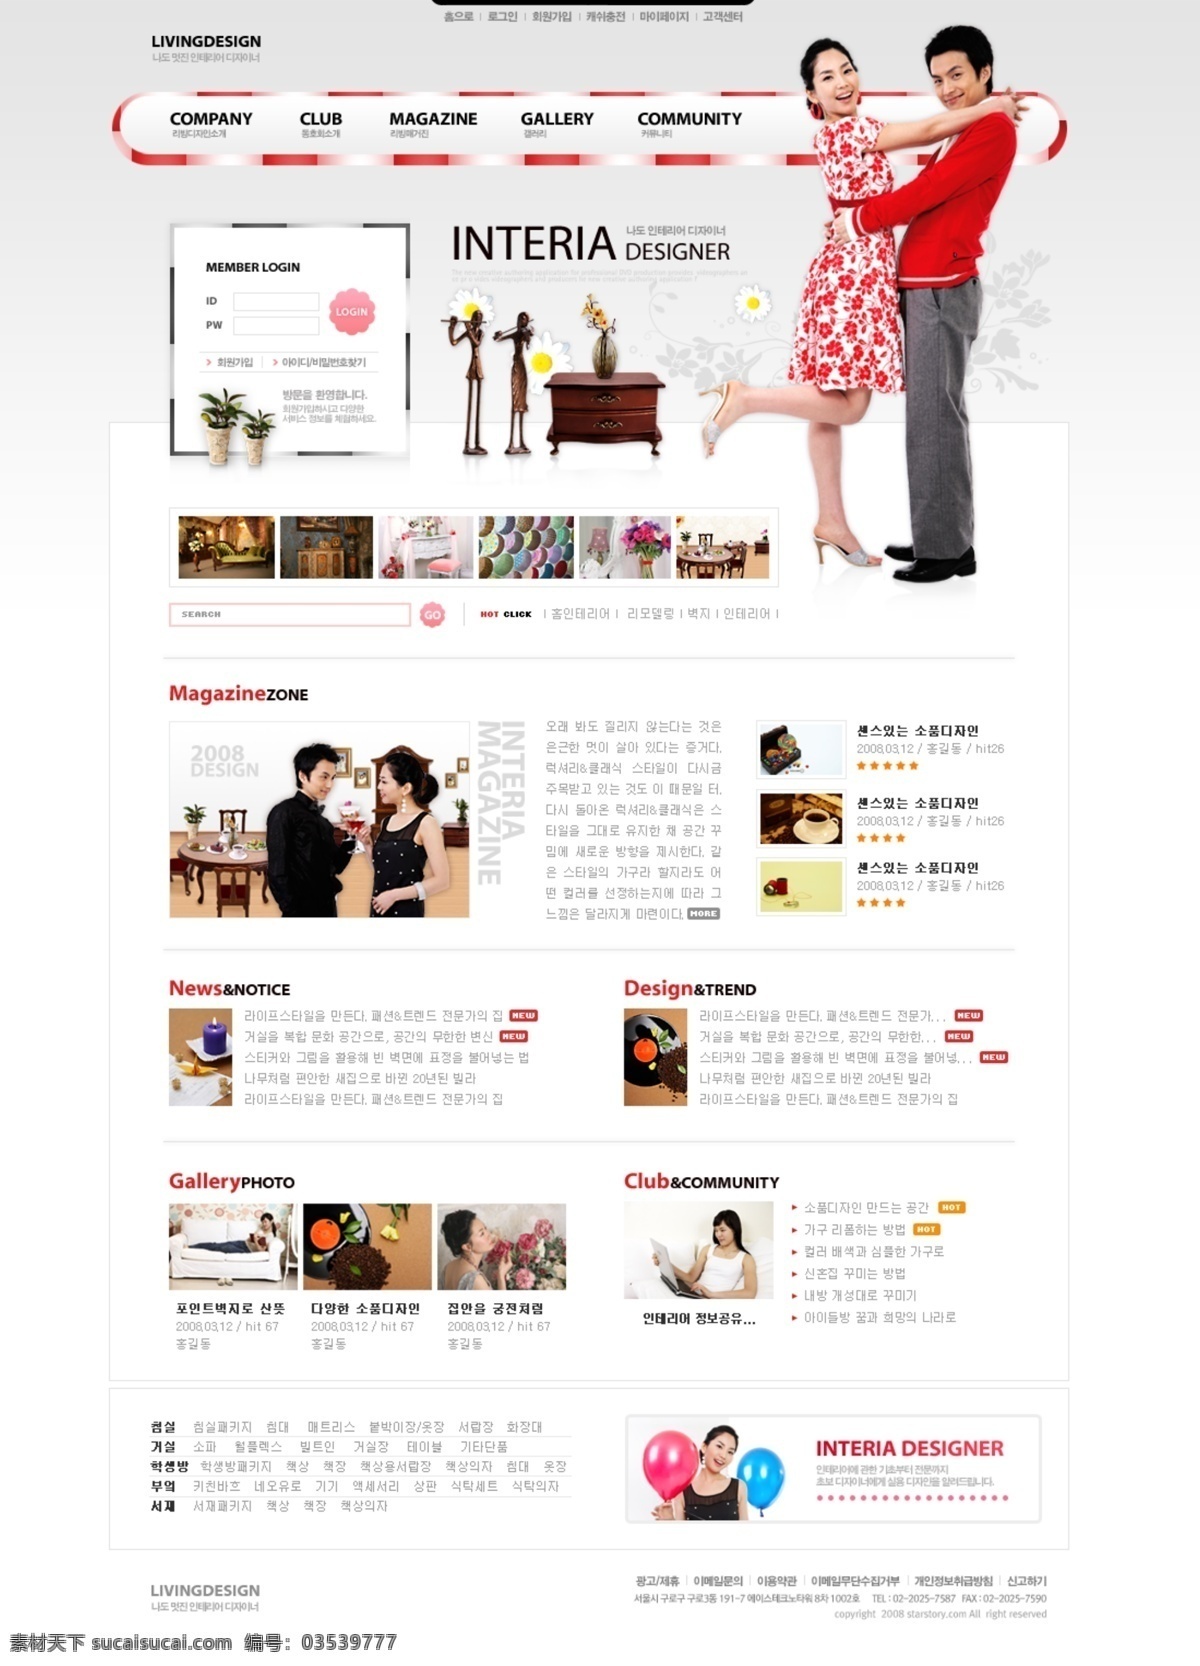 品位 现代 家居 生活 网页模板 韩国风格 恋爱 情侣 现代家居 网页素材